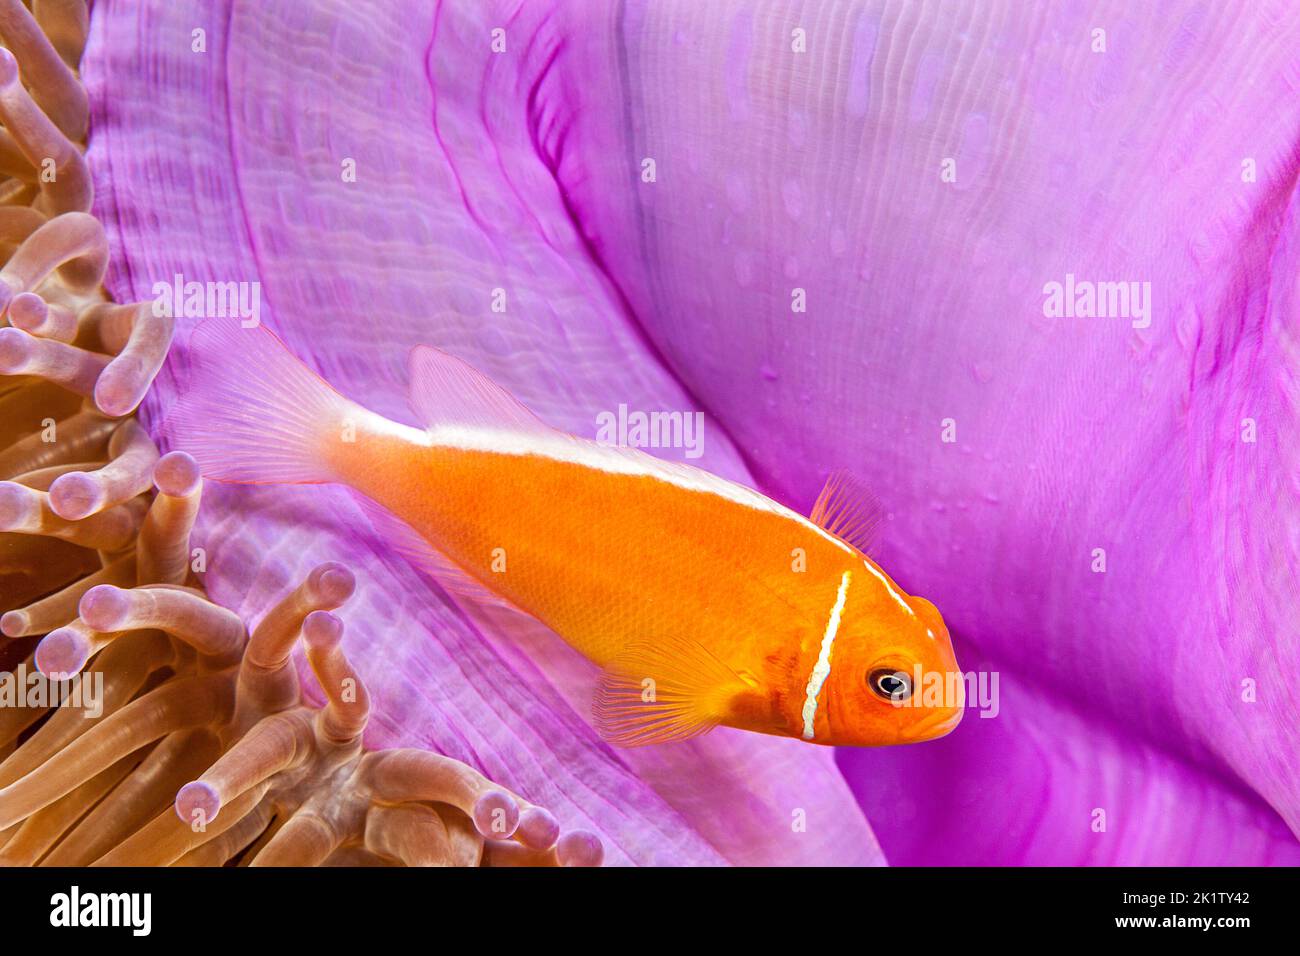 Esta común anemonefish, Amphiprion perideraion, se encuentra con más frecuencia asociada con la anémona, Heteractis magnifica, como se ilustra aquí, Yap, Microne Foto de stock